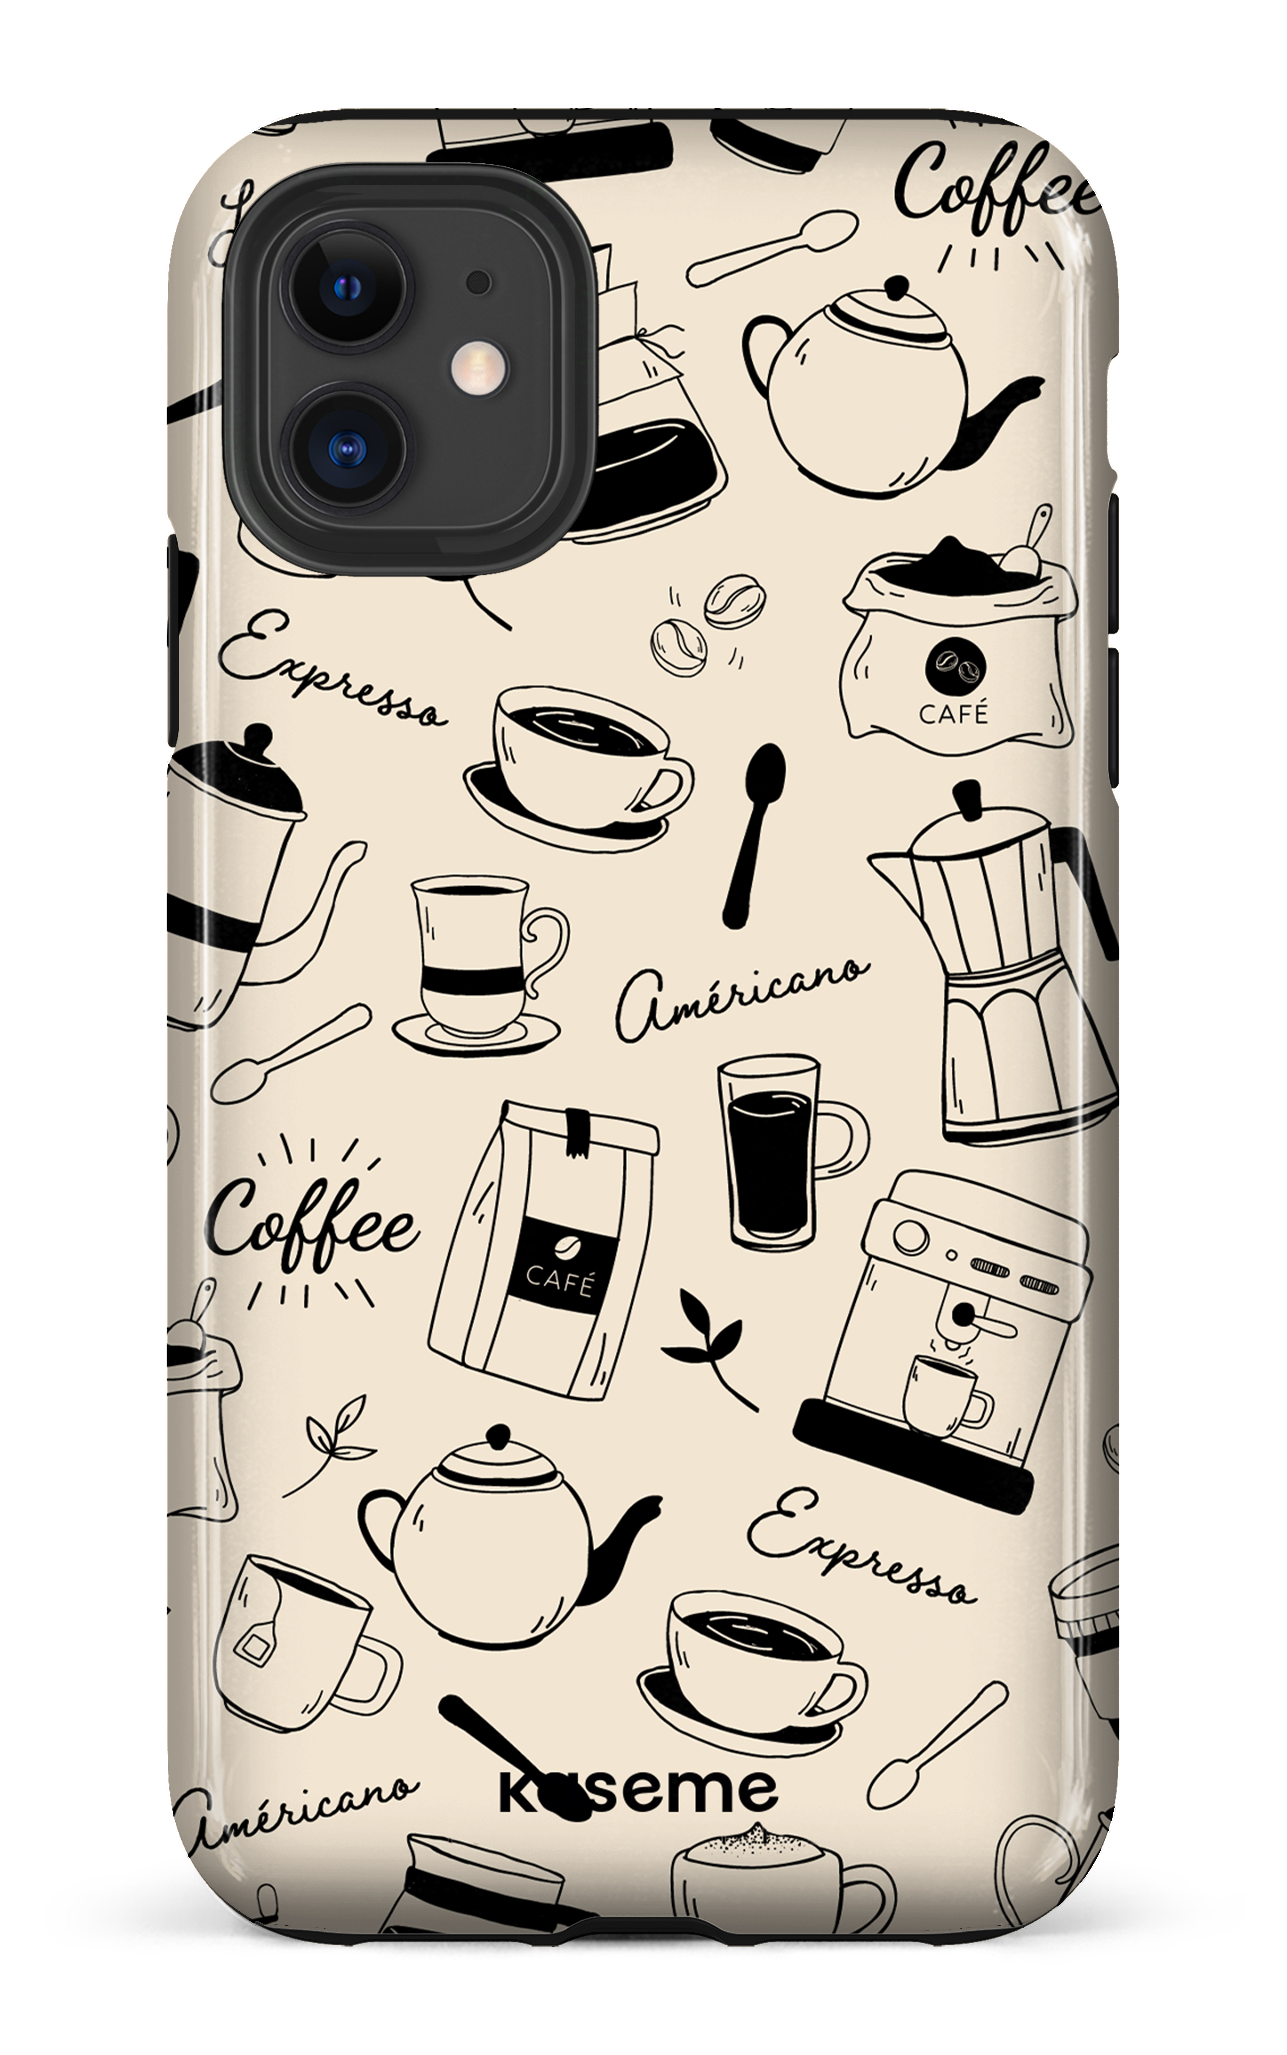 Espresso - iPhone 11